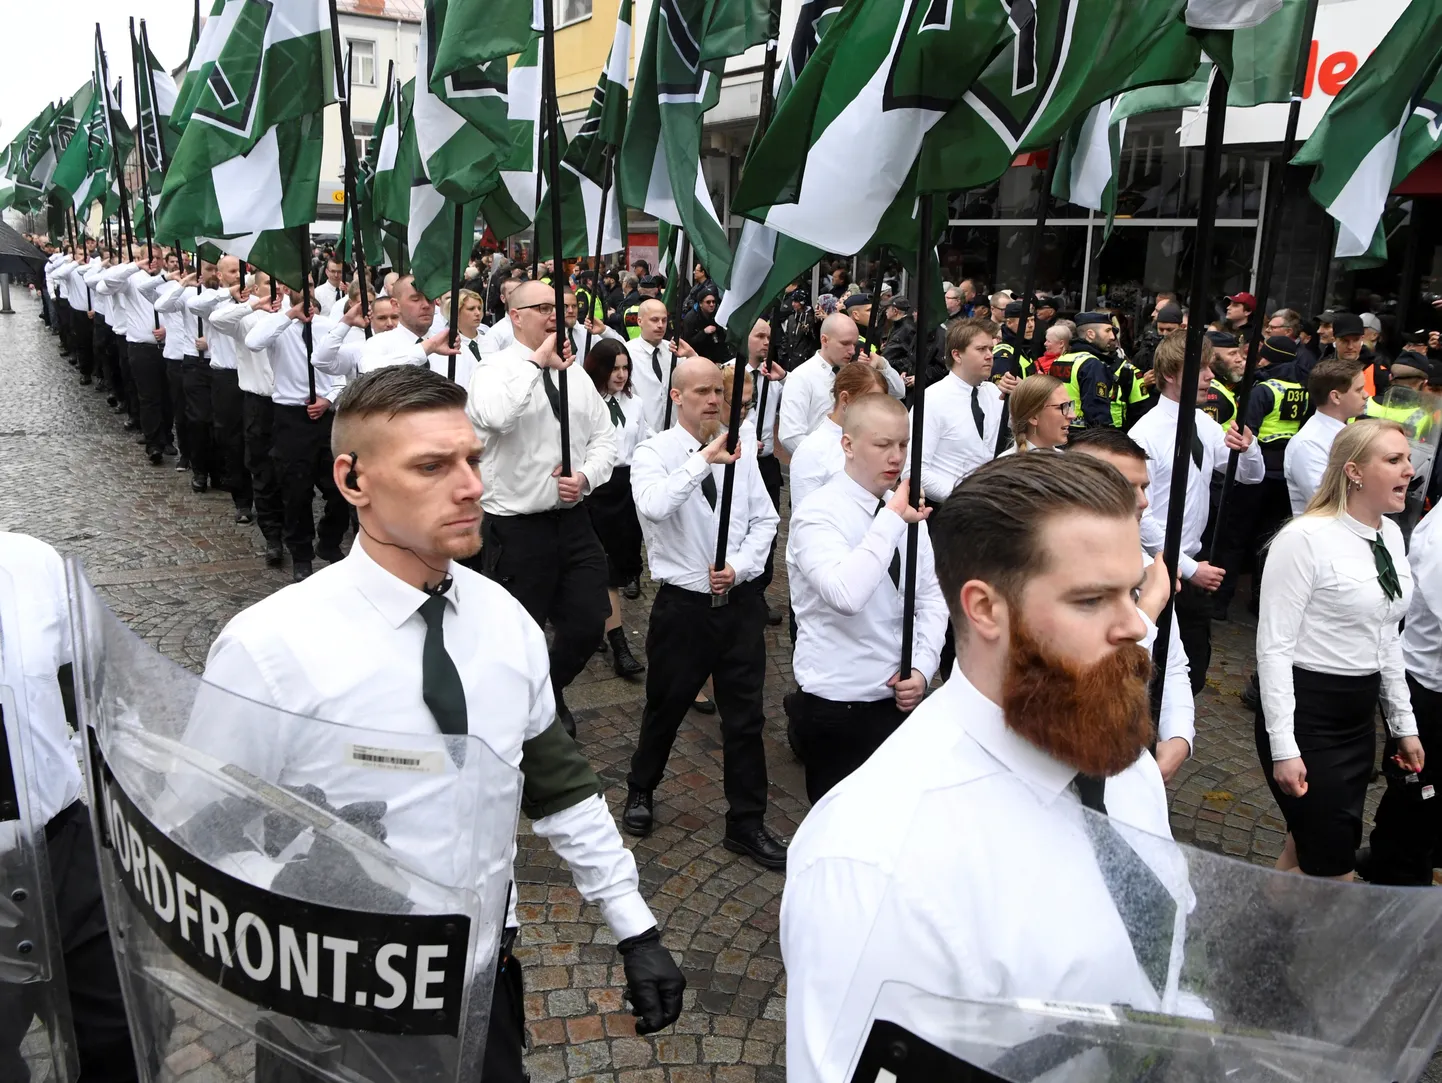 Põhjamaade Vastupanuliikumise liikmed marssimas 1. mail 2018 Rootsis Ludvika linnas. Foto on illustratiivne.